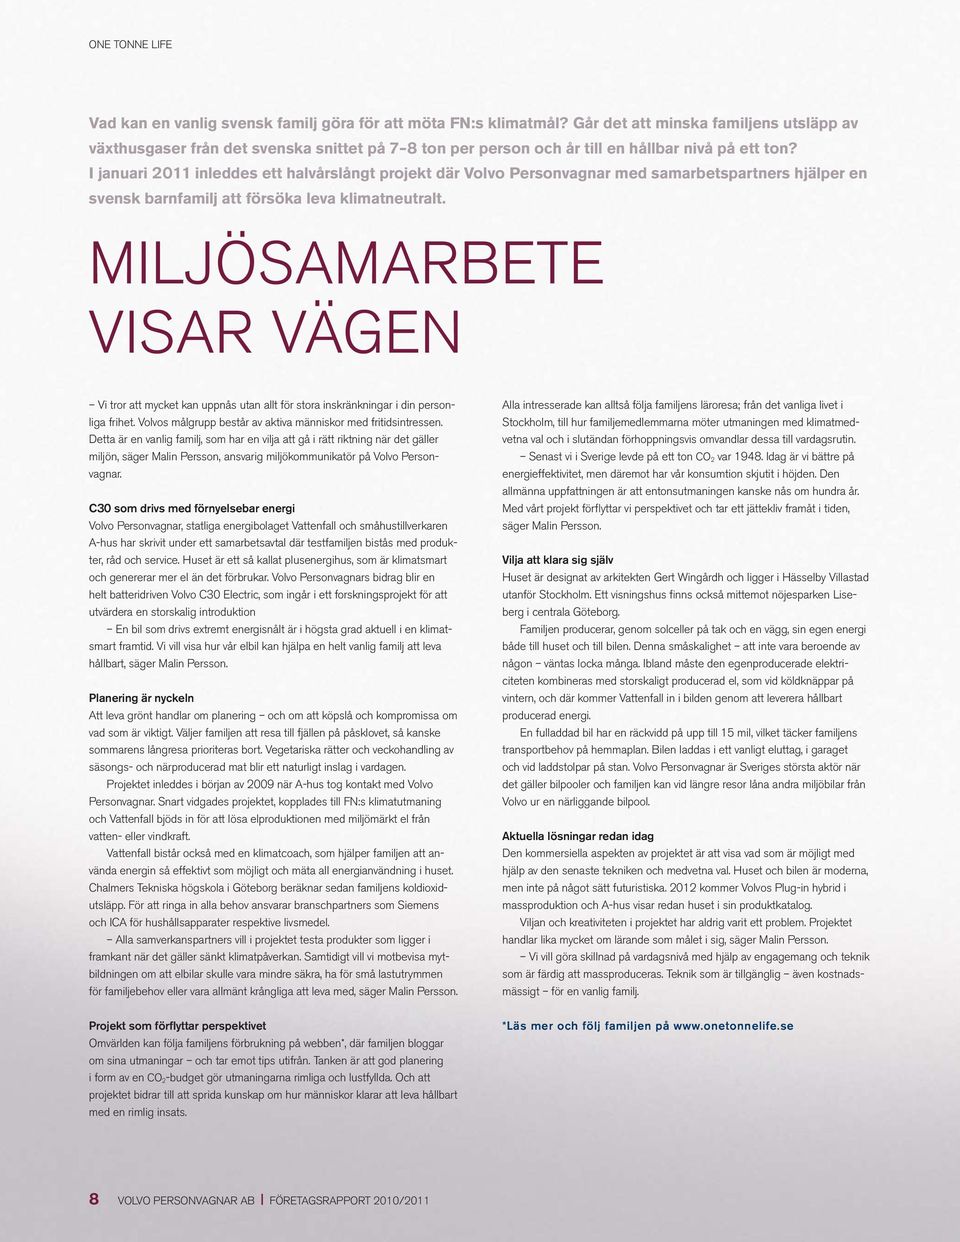 I januari 2011 inleddes ett halvårslångt projekt där Volvo Personvagnar med samarbetspartners hjälper en svensk barnfamilj att försöka leva klimatneutralt.